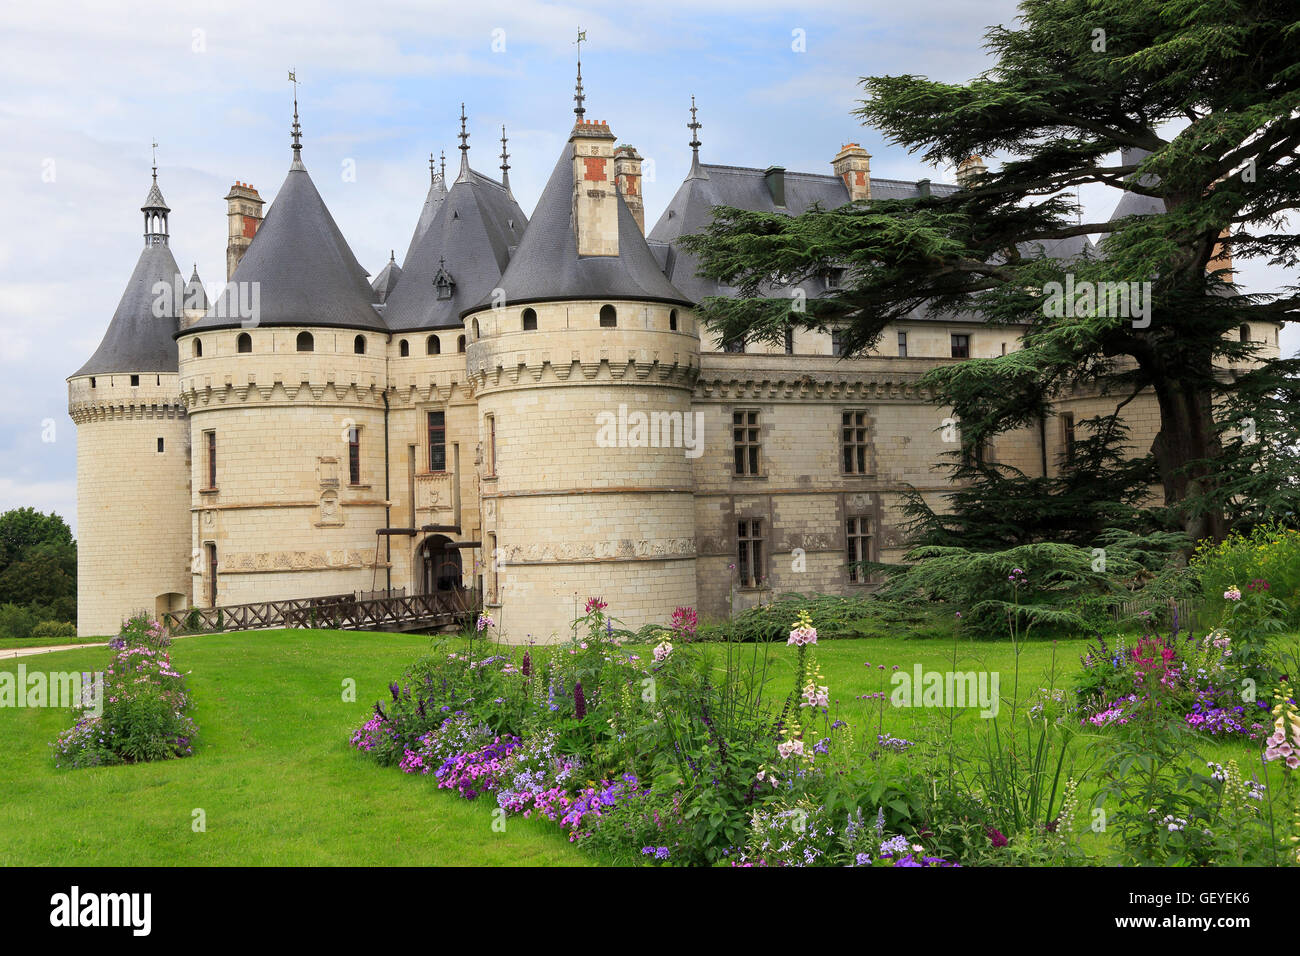 The Chateau de Chaumont is a castle in Chaumont-sur-Loire, Loir-et-Cher, France. Stock Photo